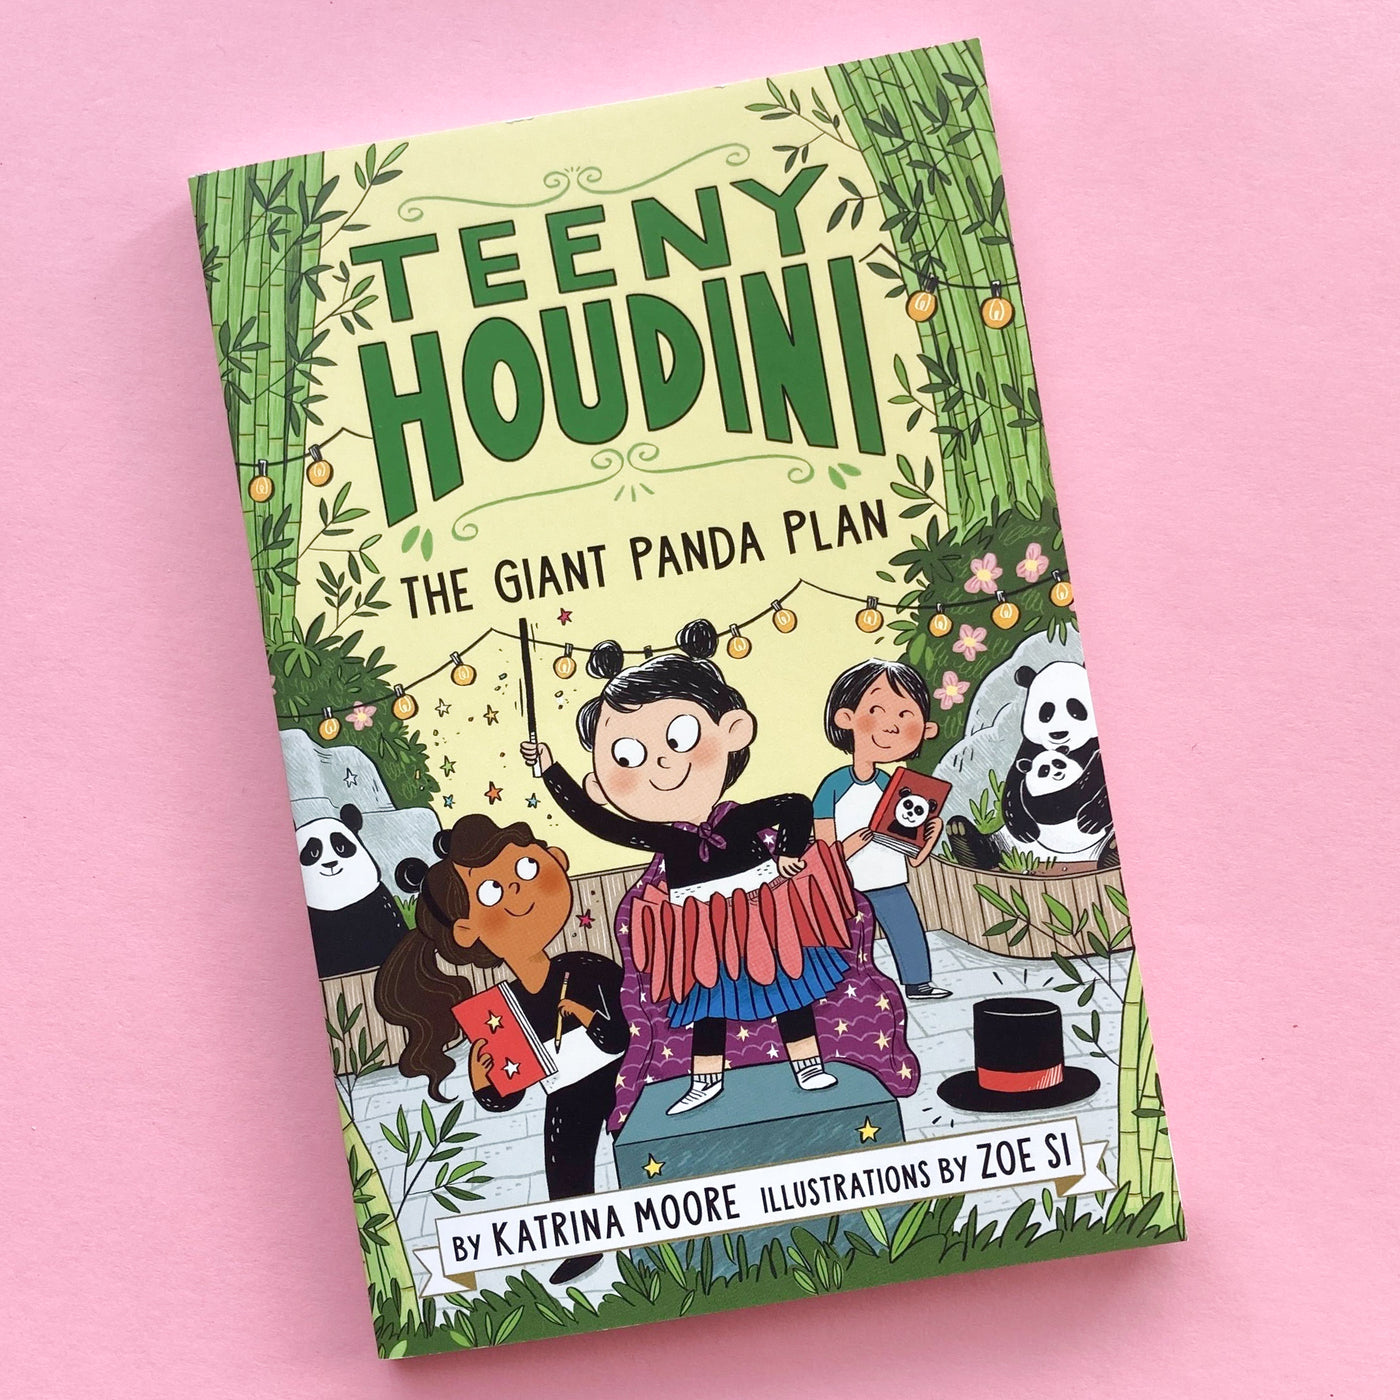 Teeny Houdini #3: The Giant Panda Plan by Katrina Moore and Zoe Si